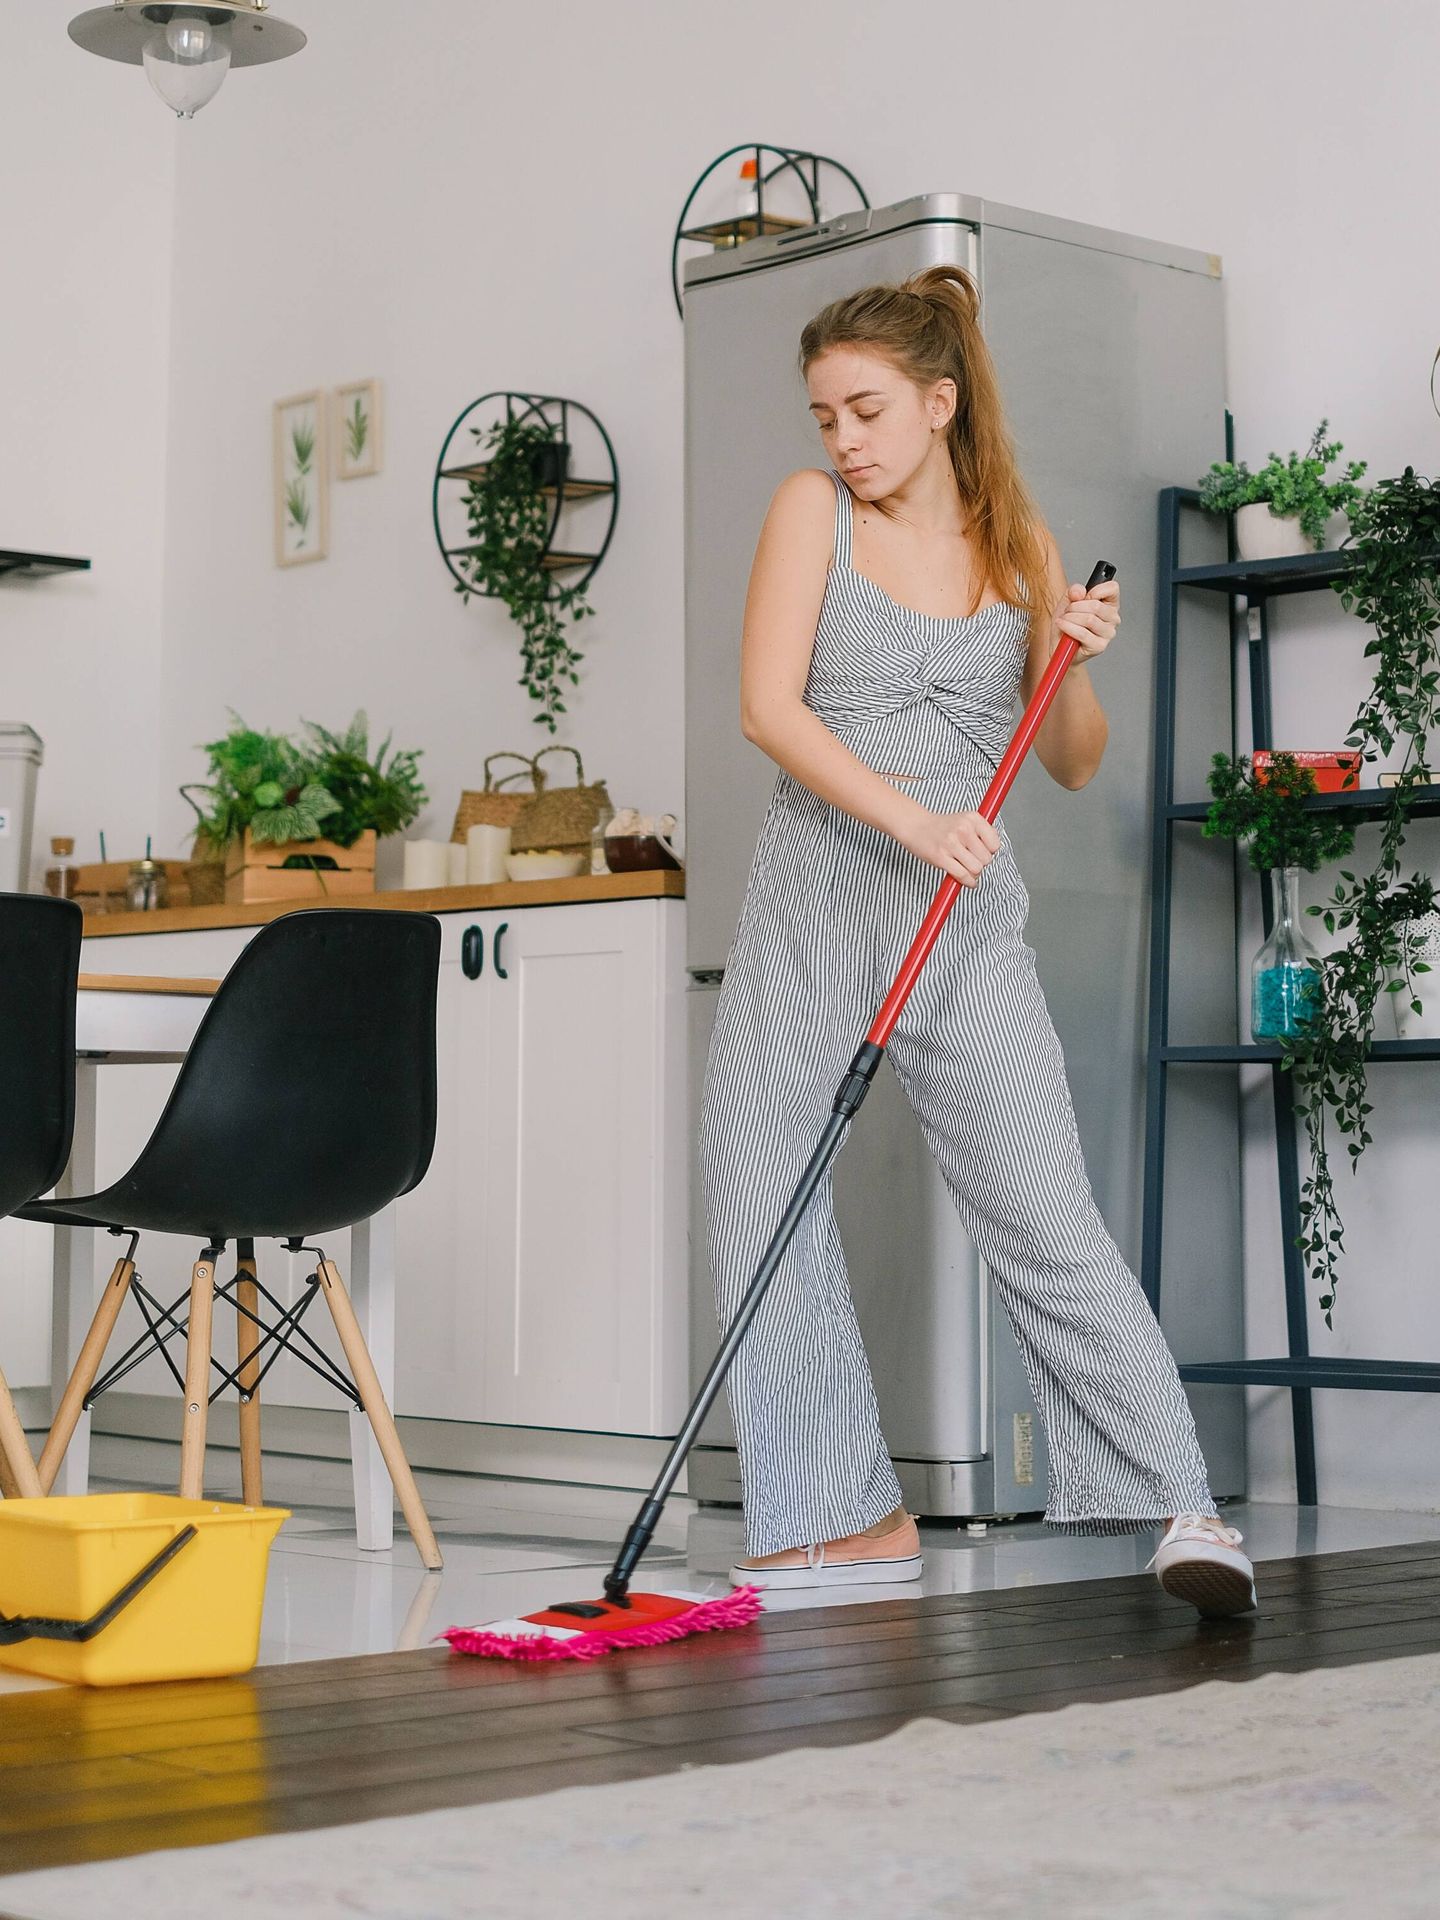 El método Fair Play para las tareas domésticas: Consigue un reparto  equitativo en el hogar